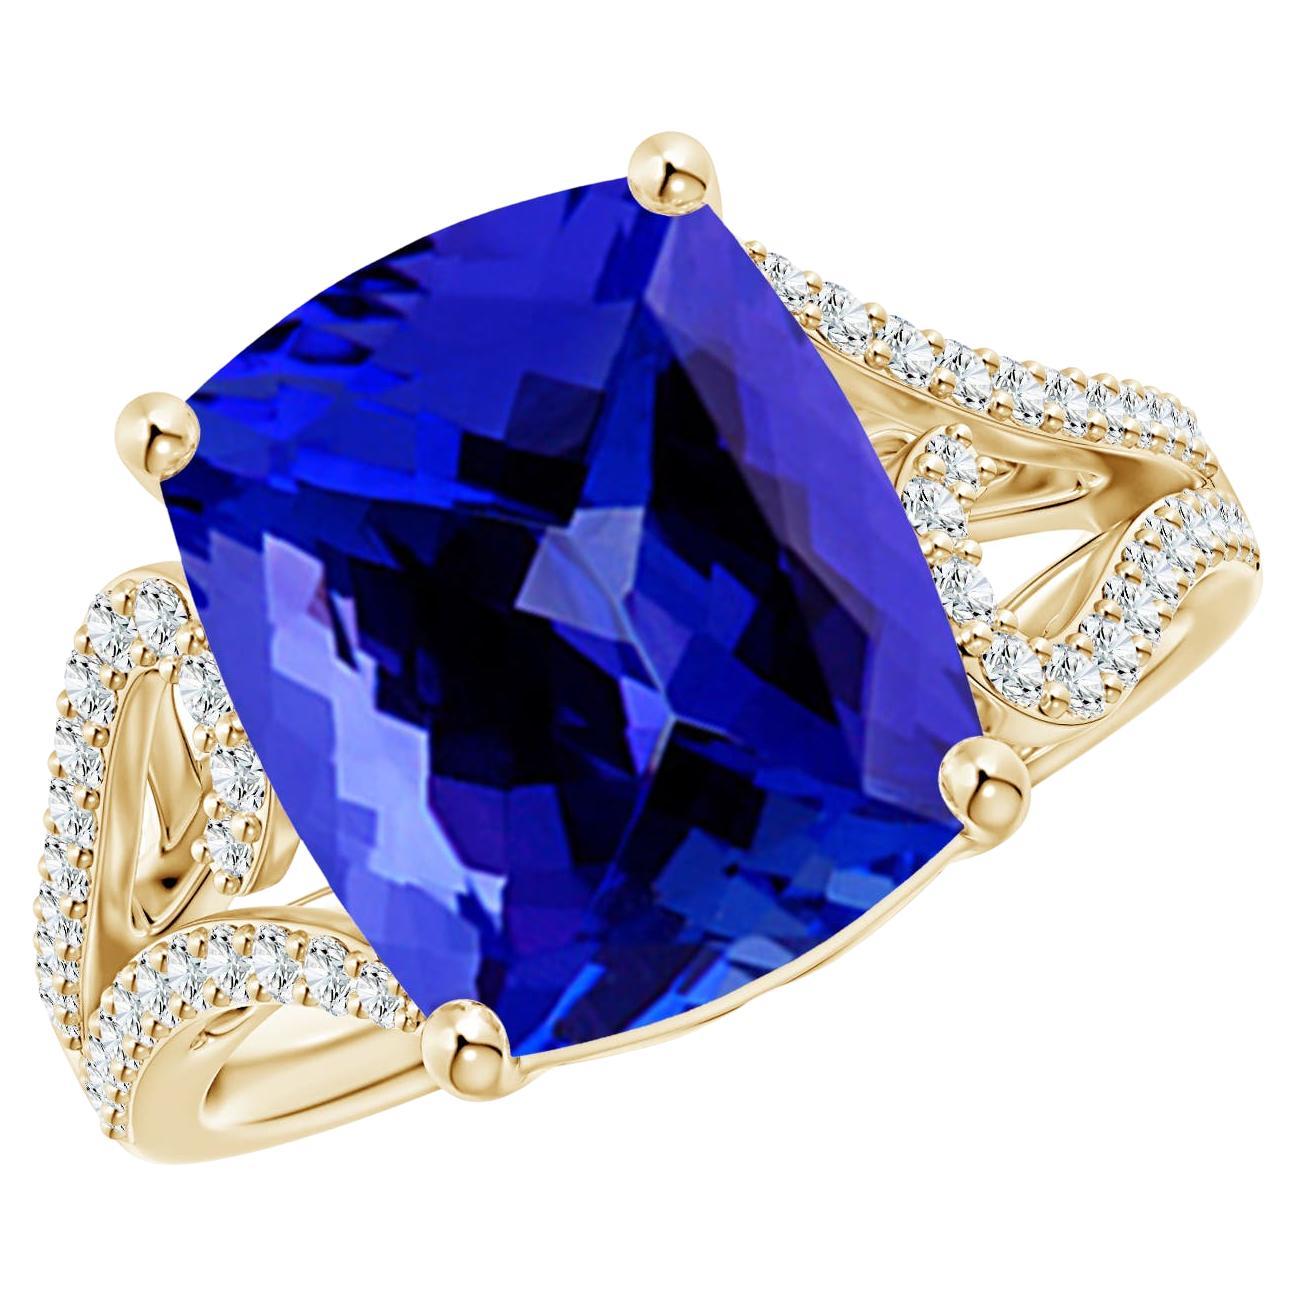 Im Angebot: Dieser Vintage-inspirierte Ring mit verschnörkelten Details und dem atemberaubenden GIA-zertifizierten ()